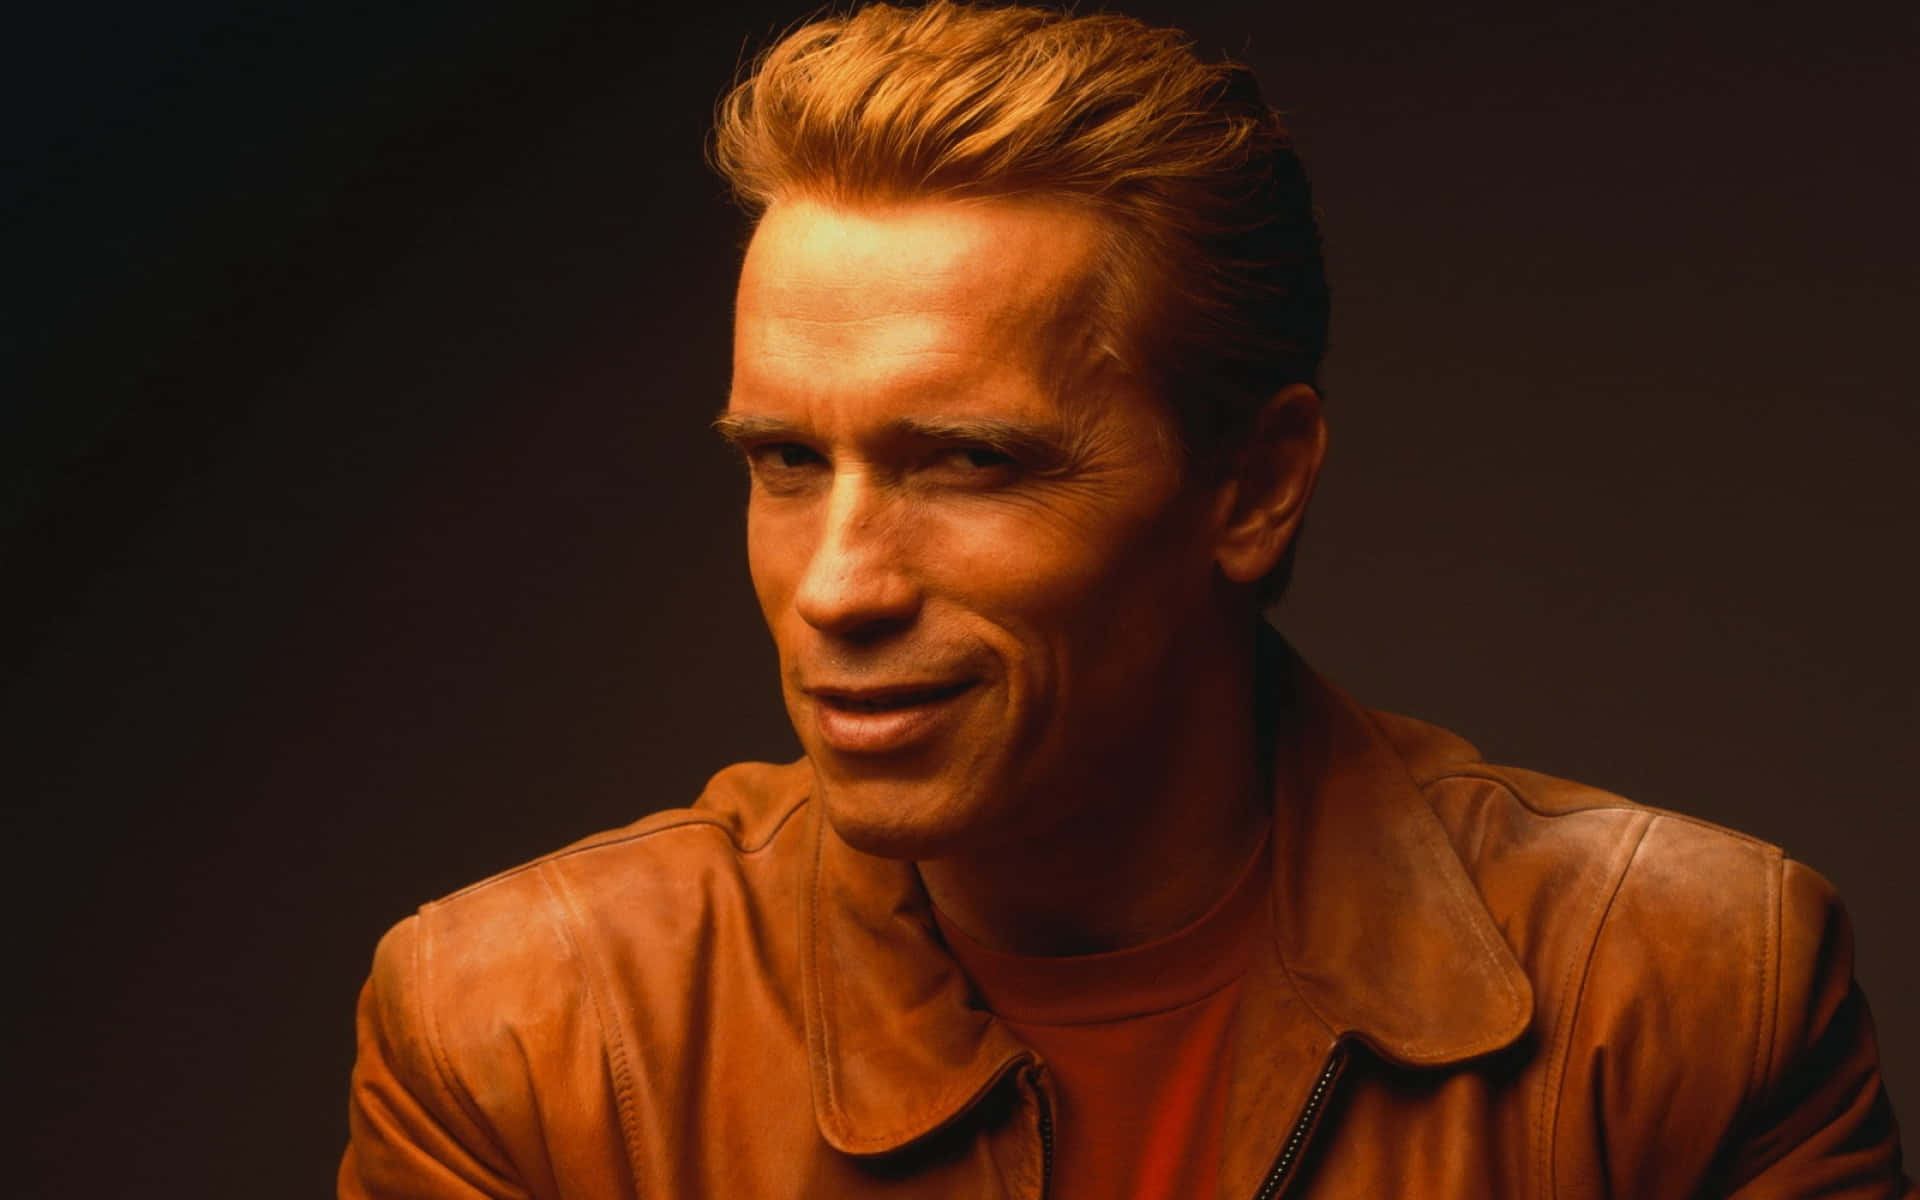 Atorlendário E Ex-governador Arnold Schwarzenegger